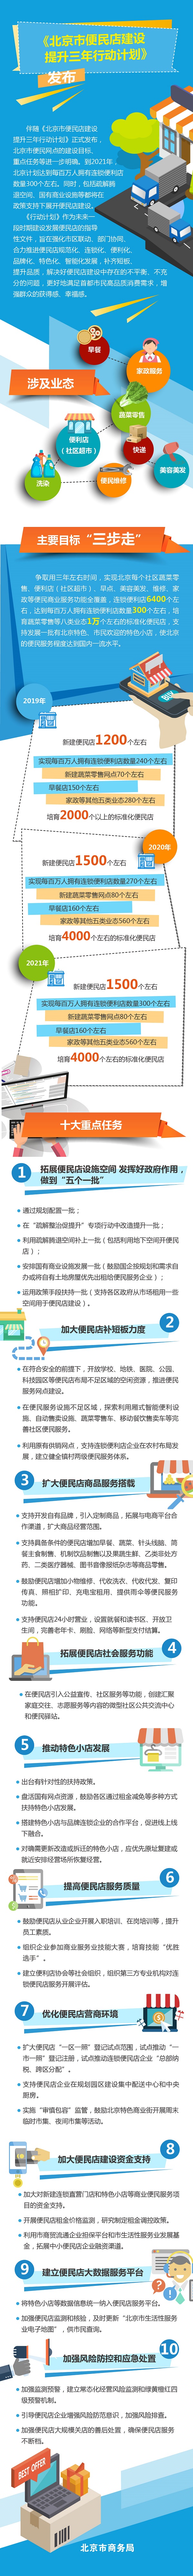 一图读懂《北京市便民店建设提升三年行动计划》.jpg